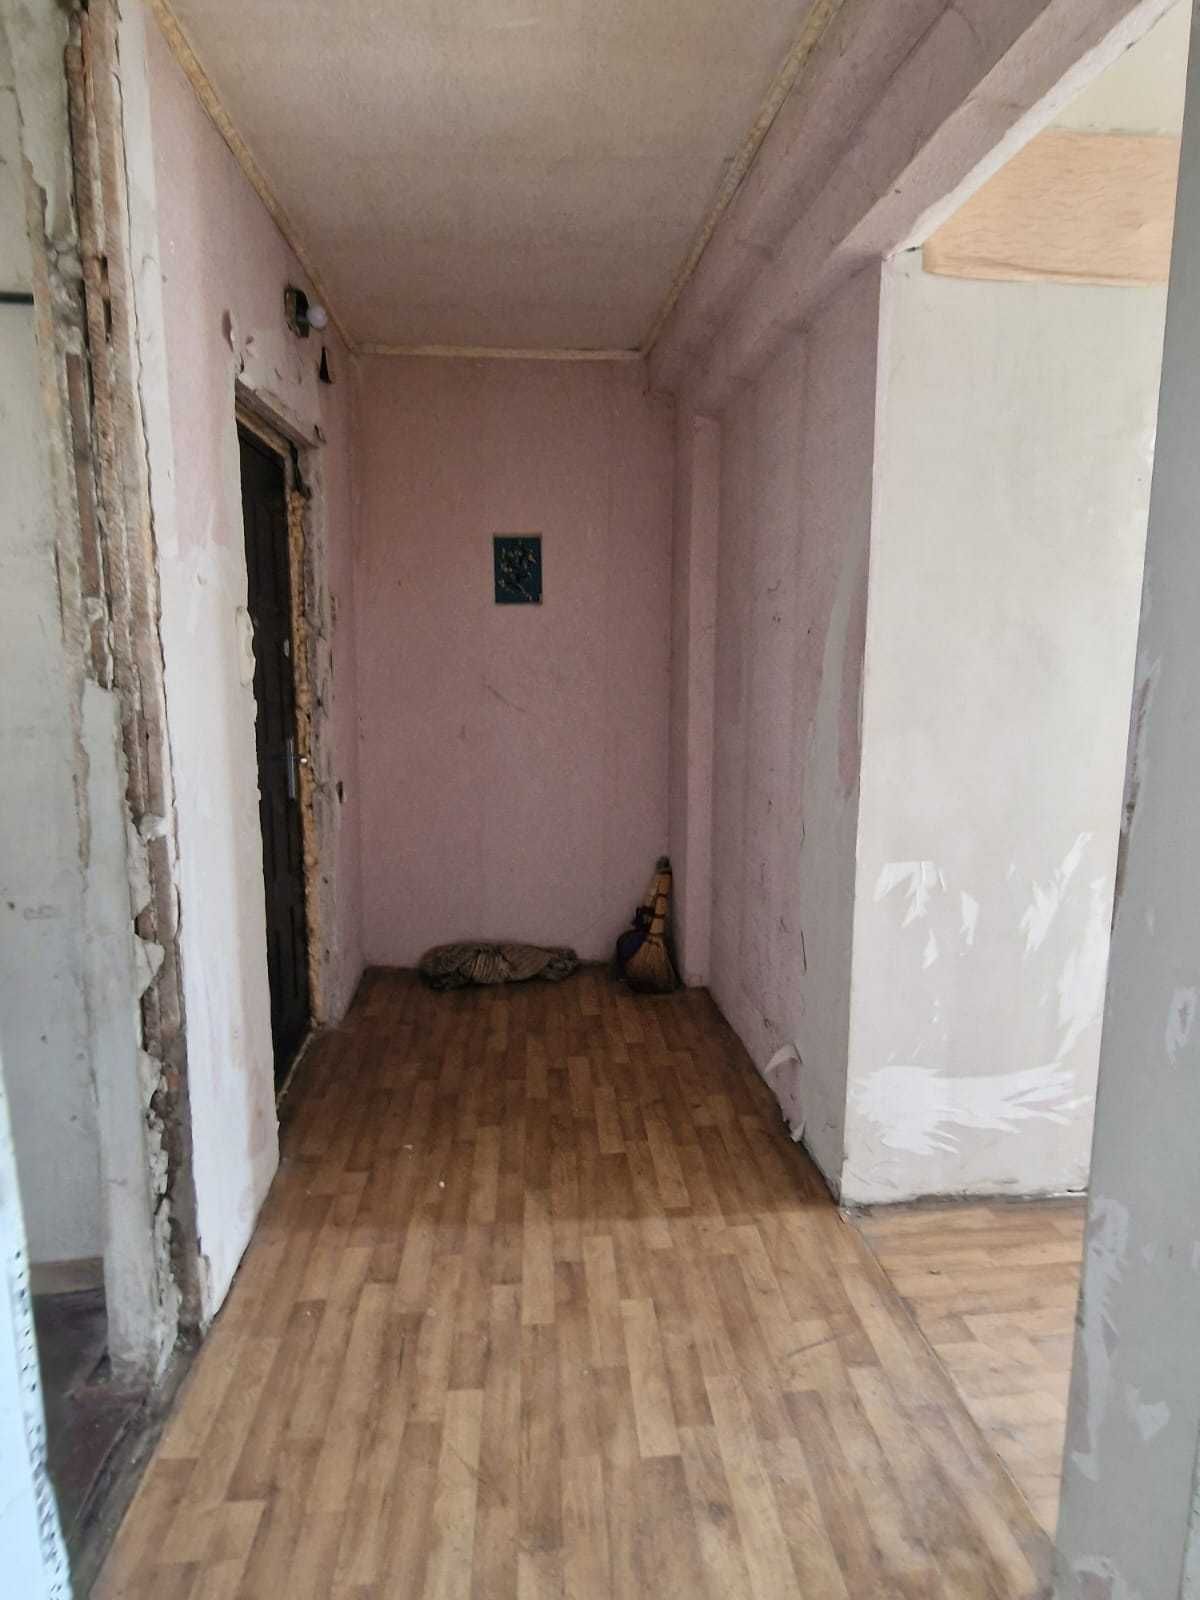 Продам Свою 1 комнатную квартиру на Одесской